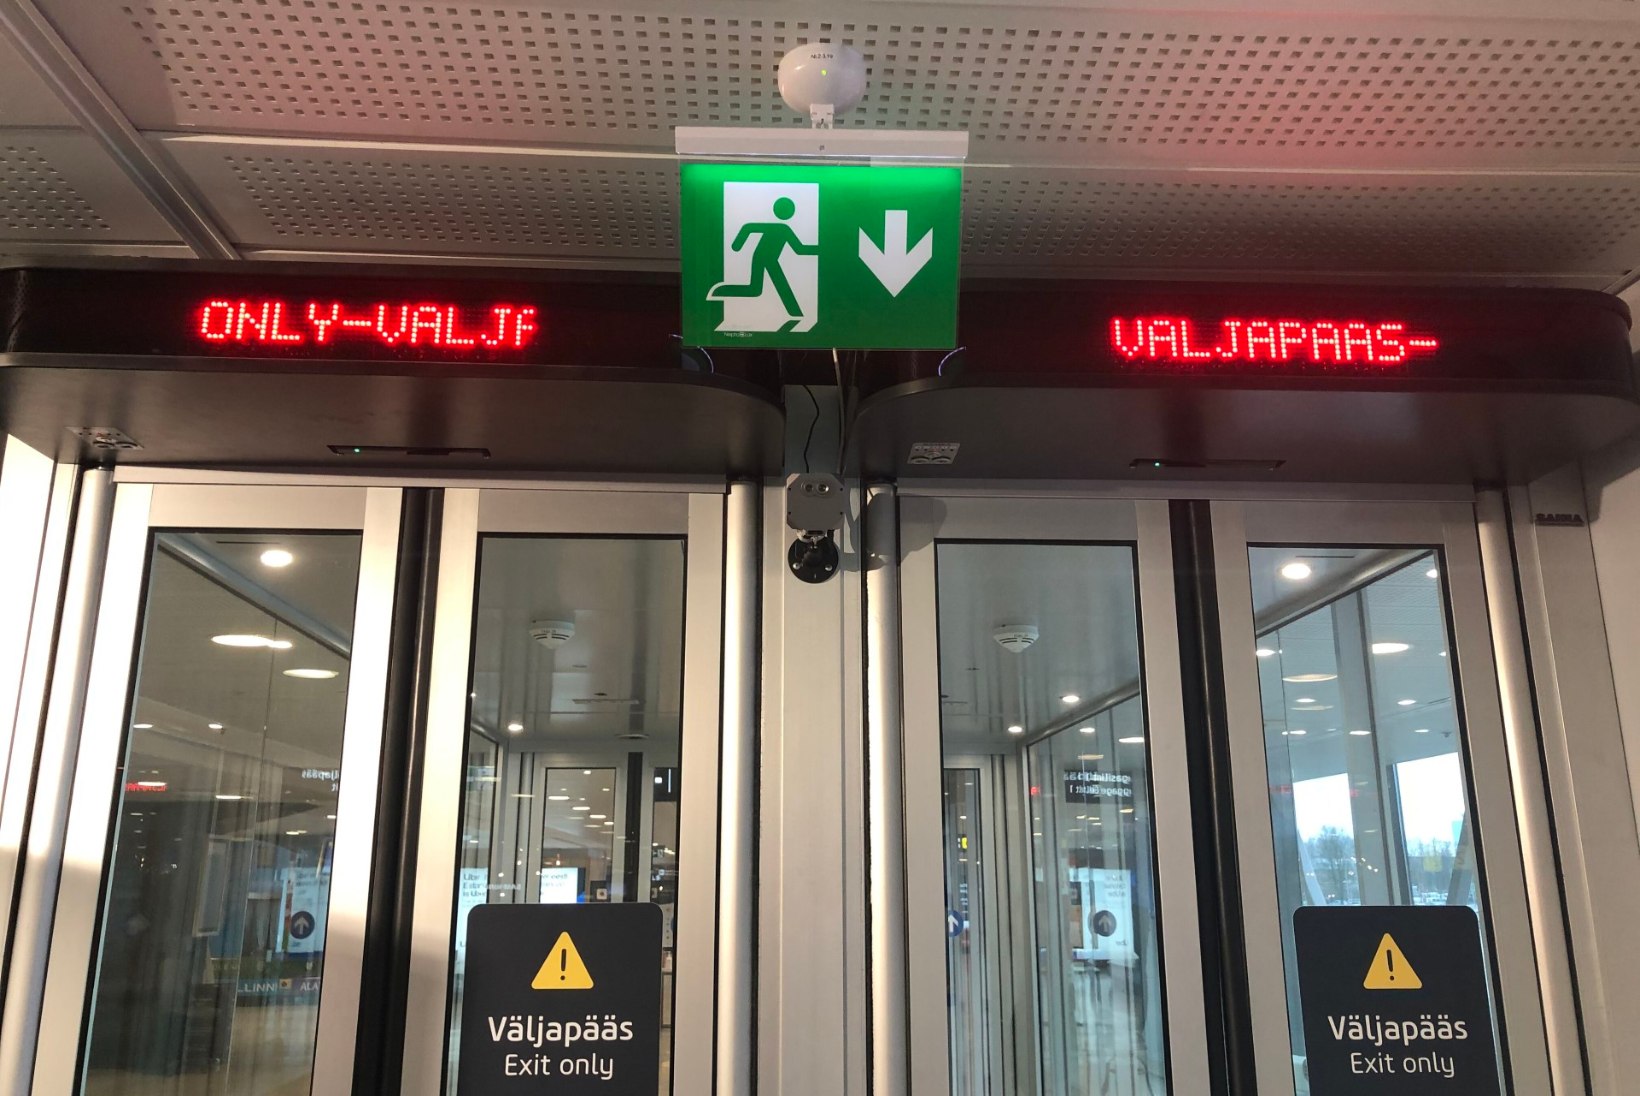 KOROONA, VAATA ETTE! Lennujaama termokaamera piidleb kõiki reisijaid